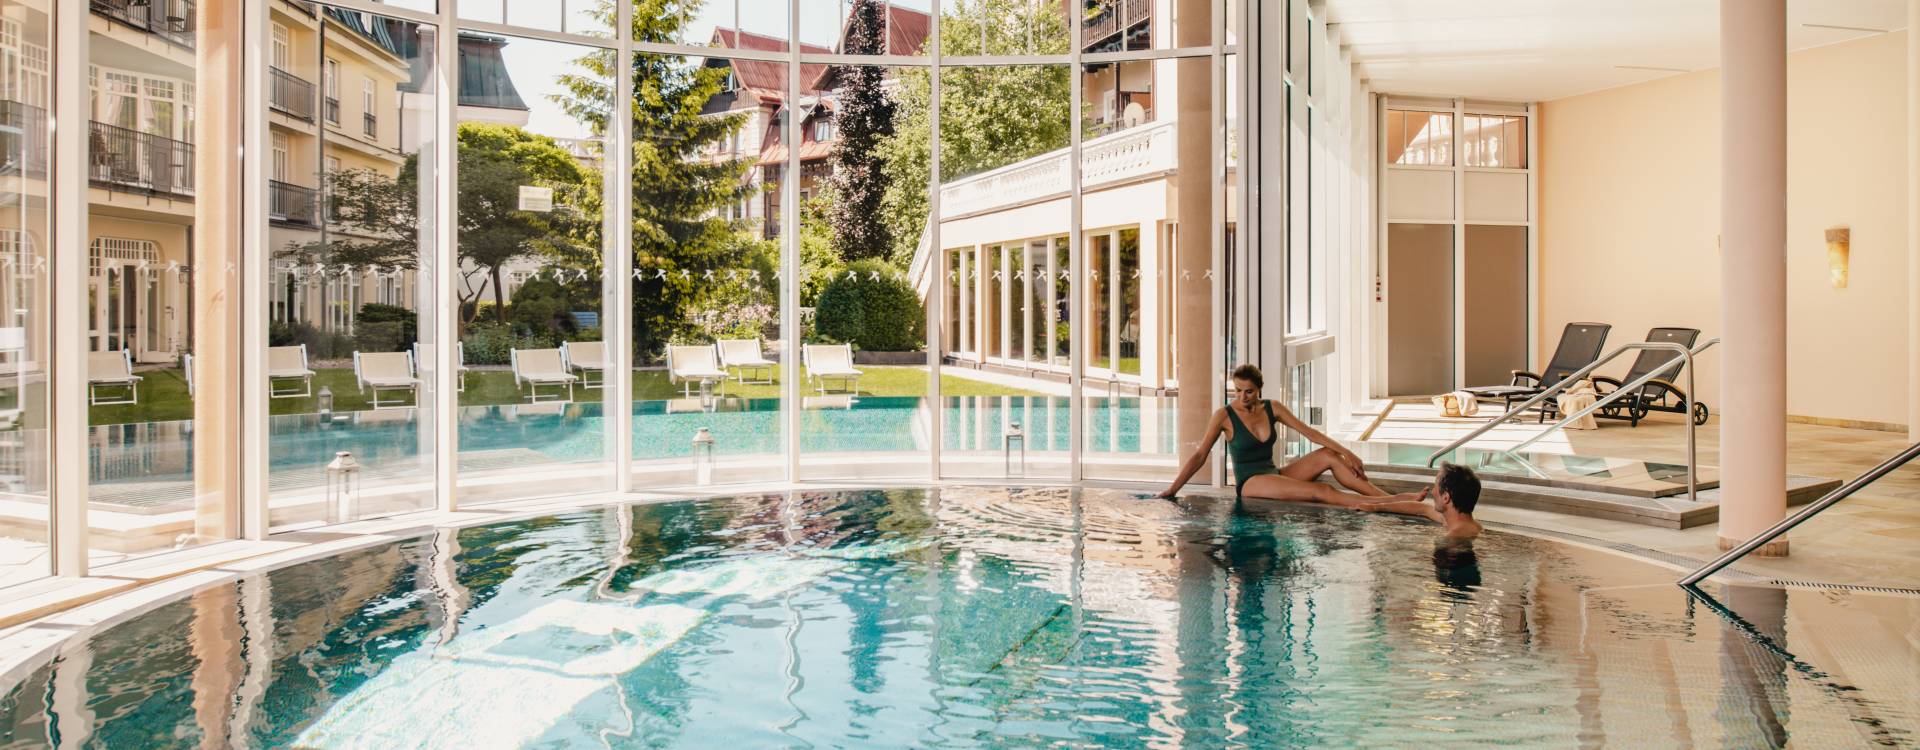 Falkensteiner Spa Resort  - Relax á la carte Premium